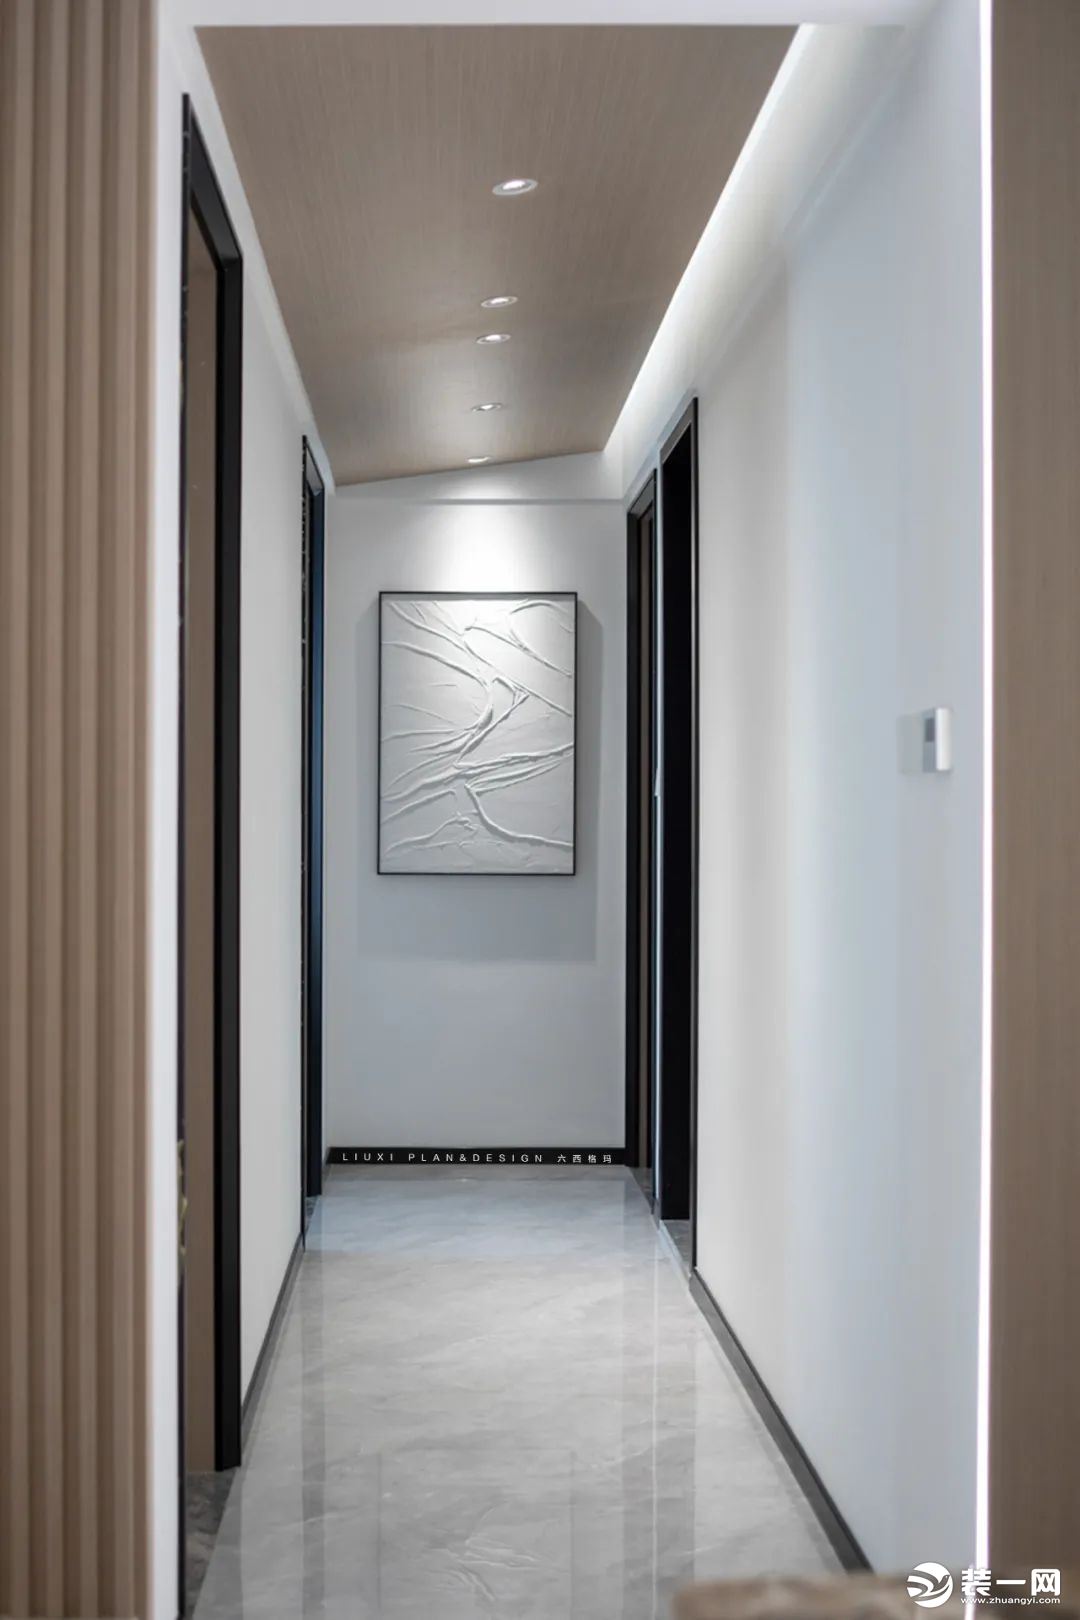 走廊尽头的抽象石膏画，在顶上射灯的照射下形成柔和的漫反射，提升空间整体气质。